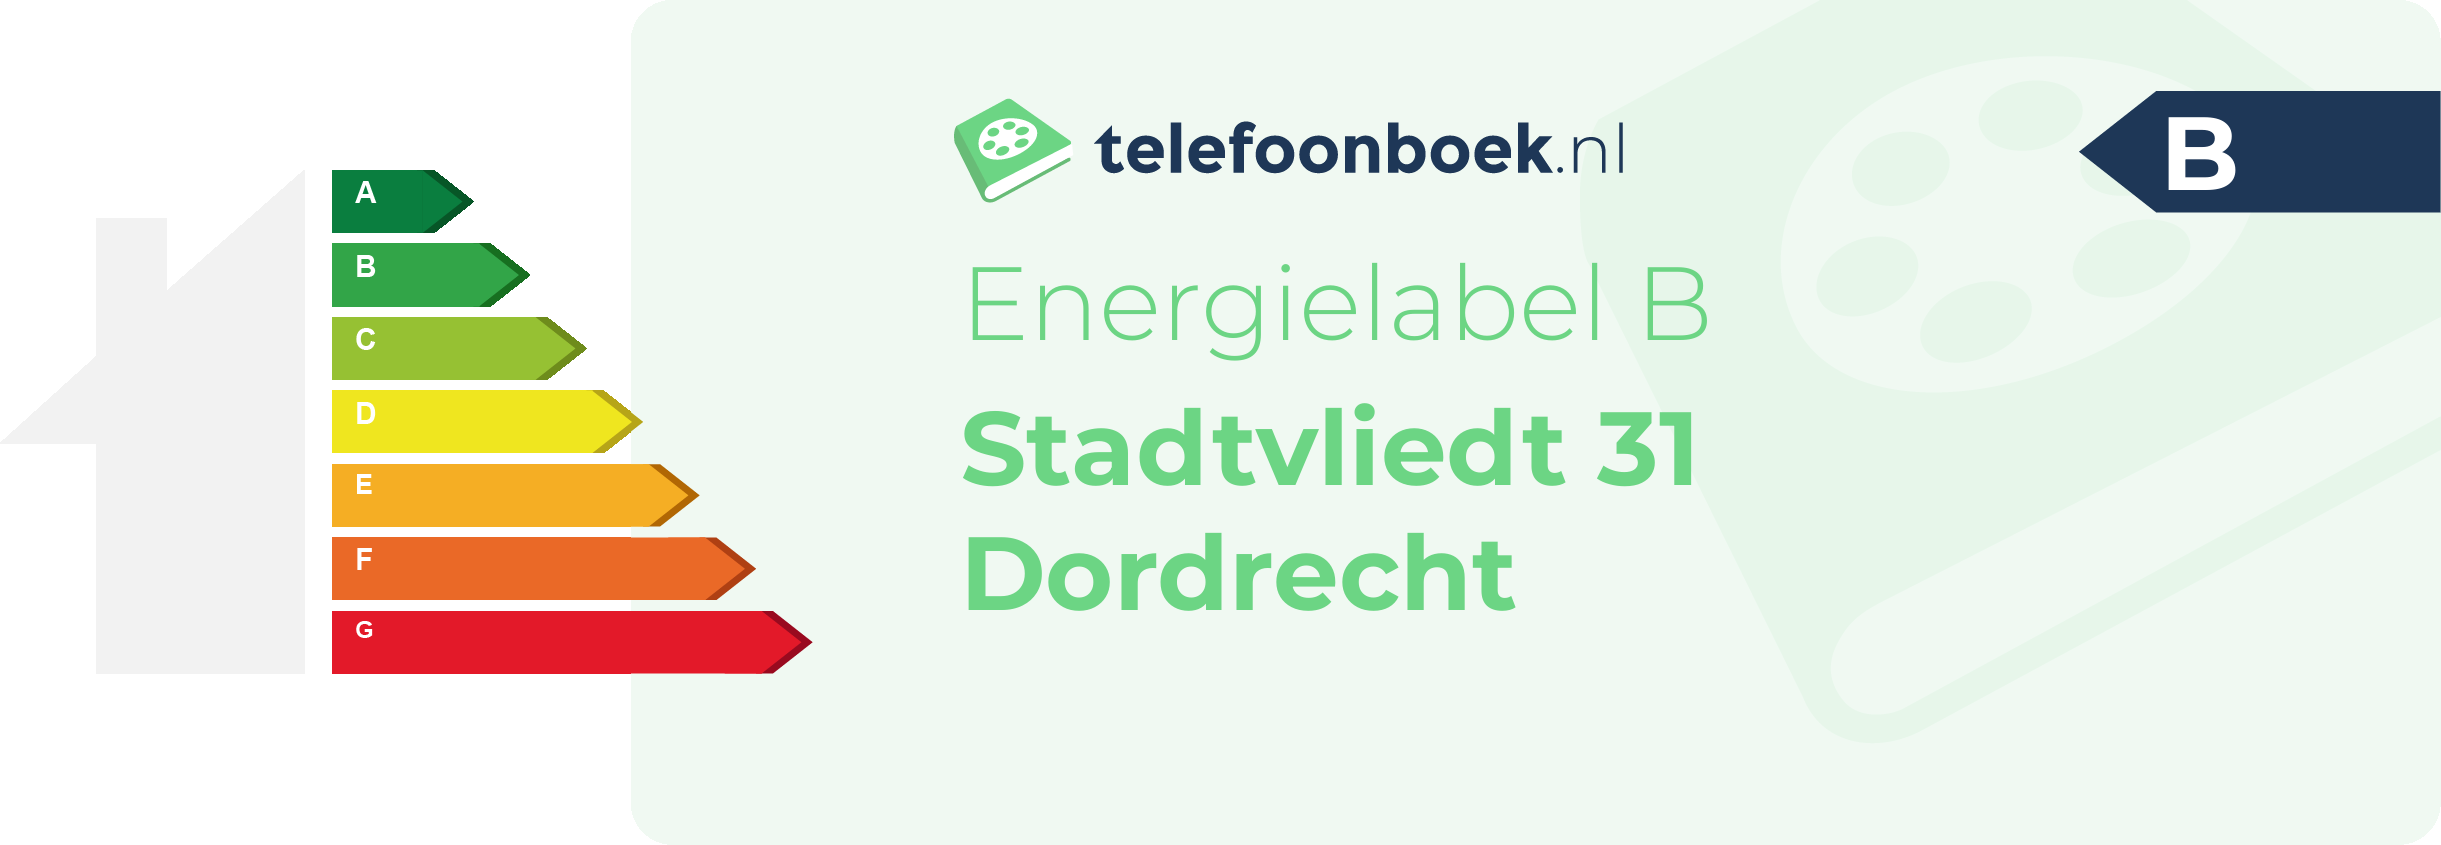 Energielabel Stadtvliedt 31 Dordrecht